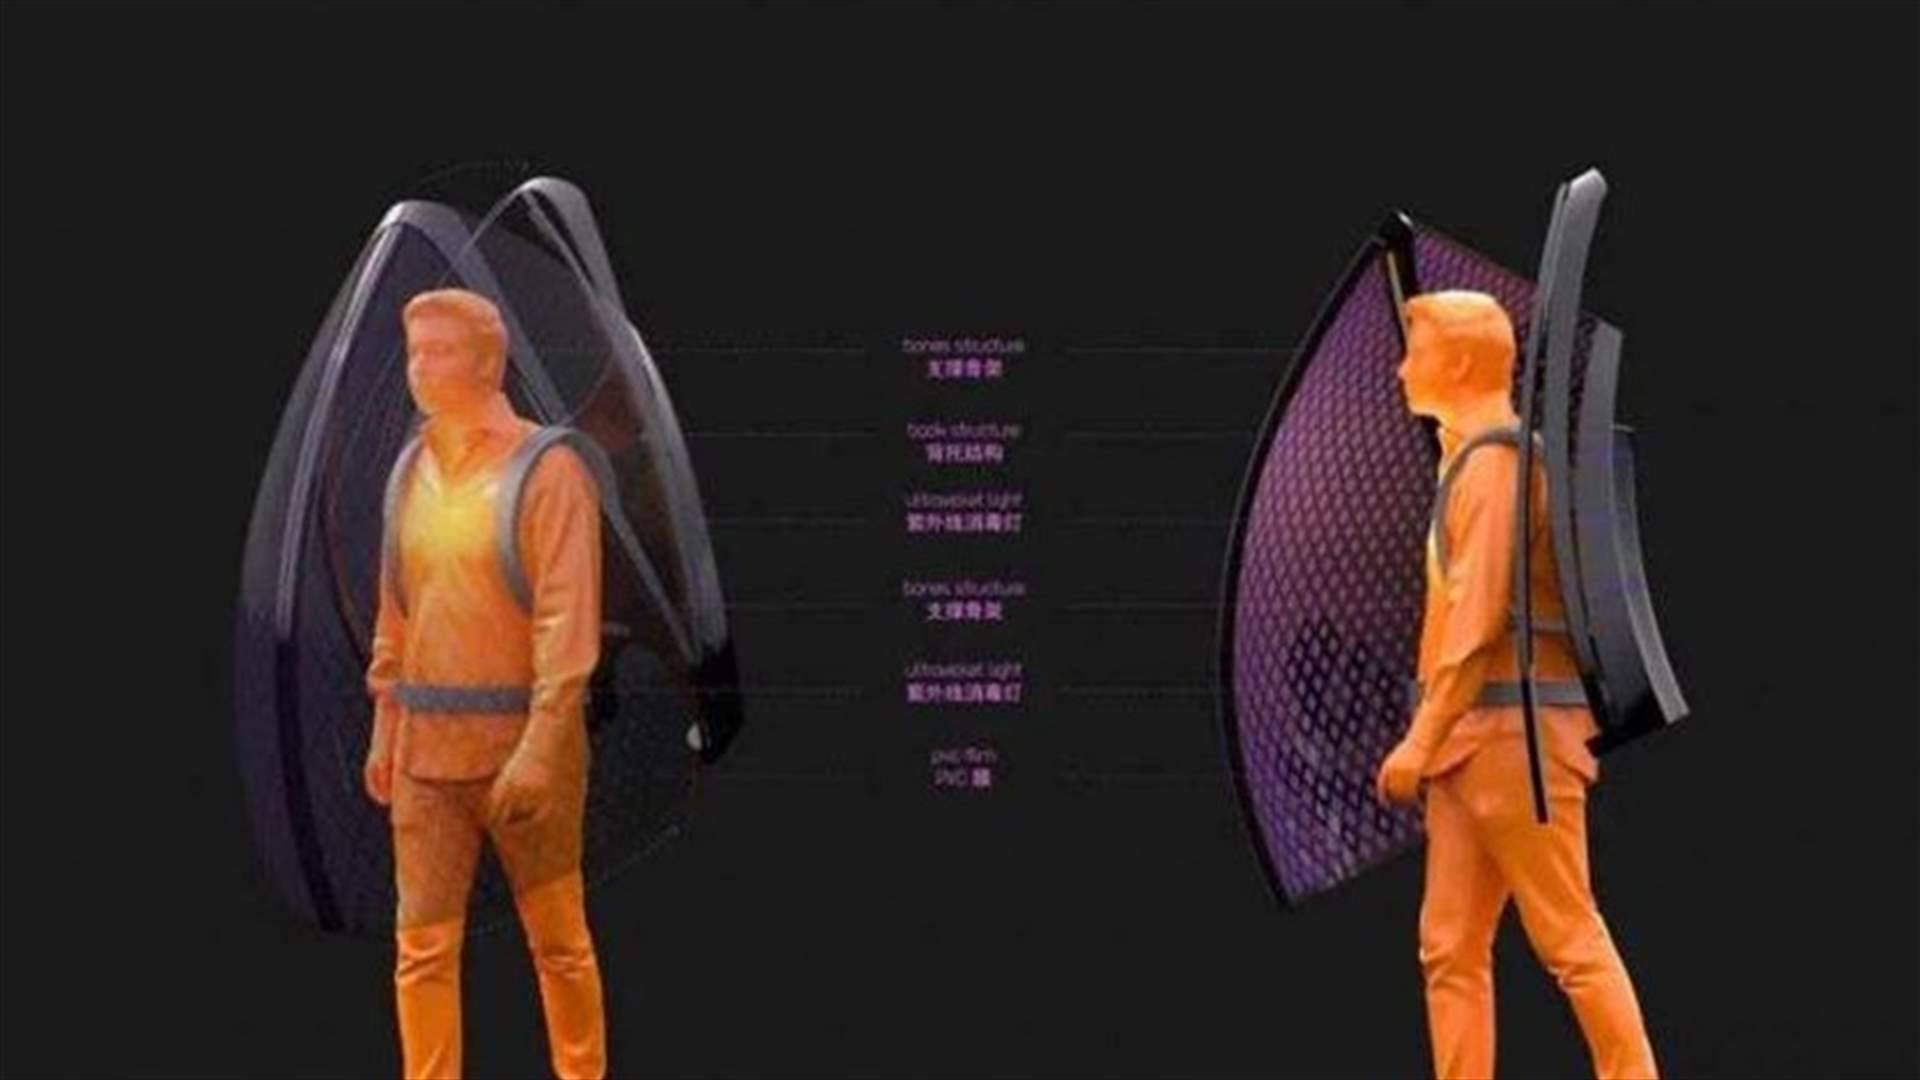 مهندس صيني يصمم درعاً واقياً من فيروس كورونا مستوحى من الخفافيش (صور)